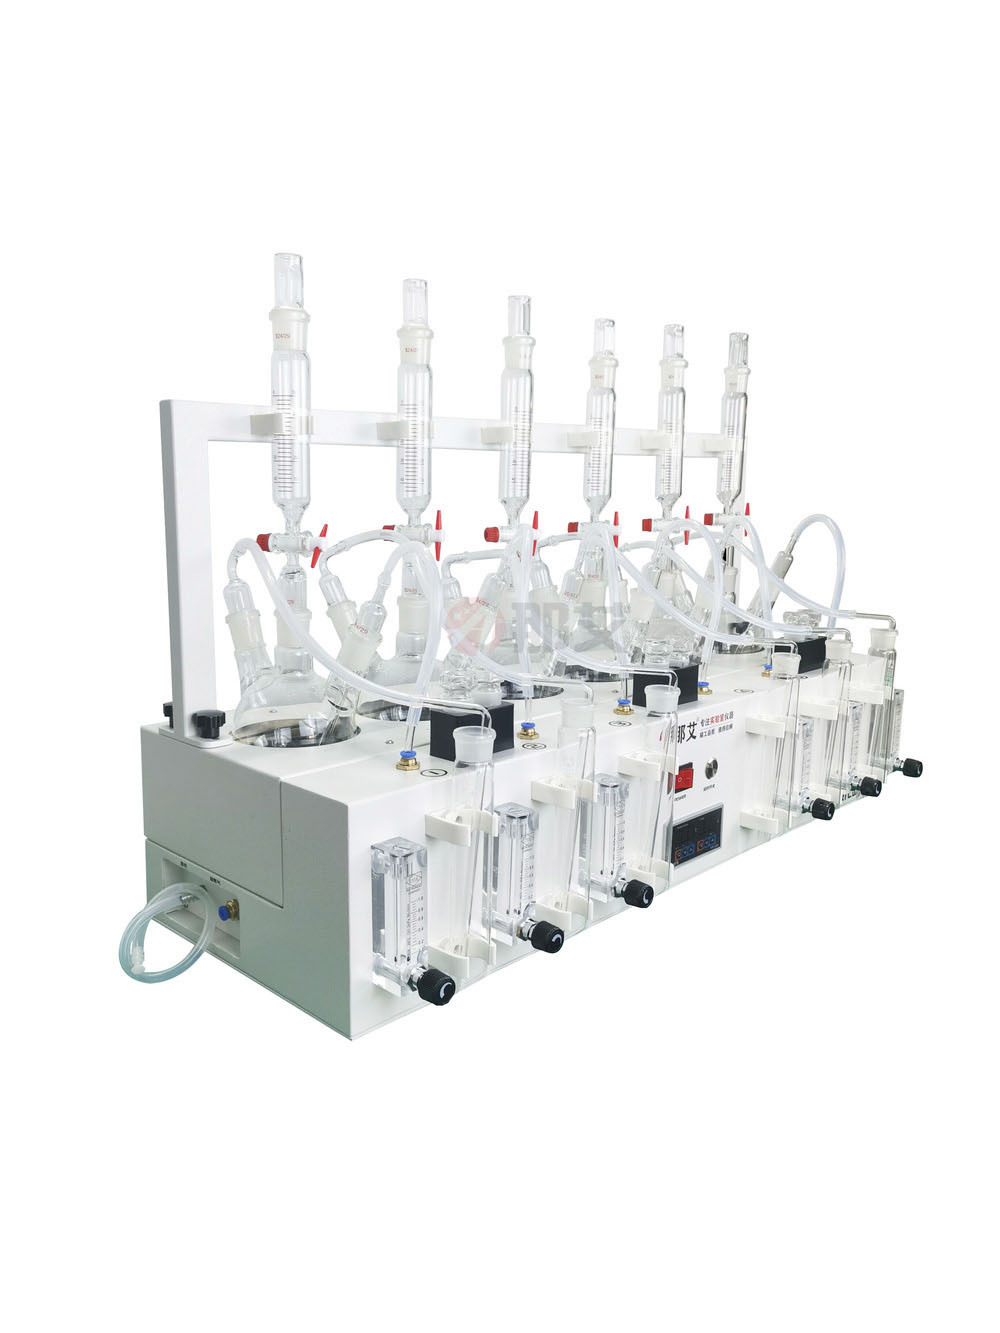 硫化物酸化吹气仪,硫化物酸化吹气吸收装置,采用恒温水浴加热方式氮气流量独立控制调节或关闭